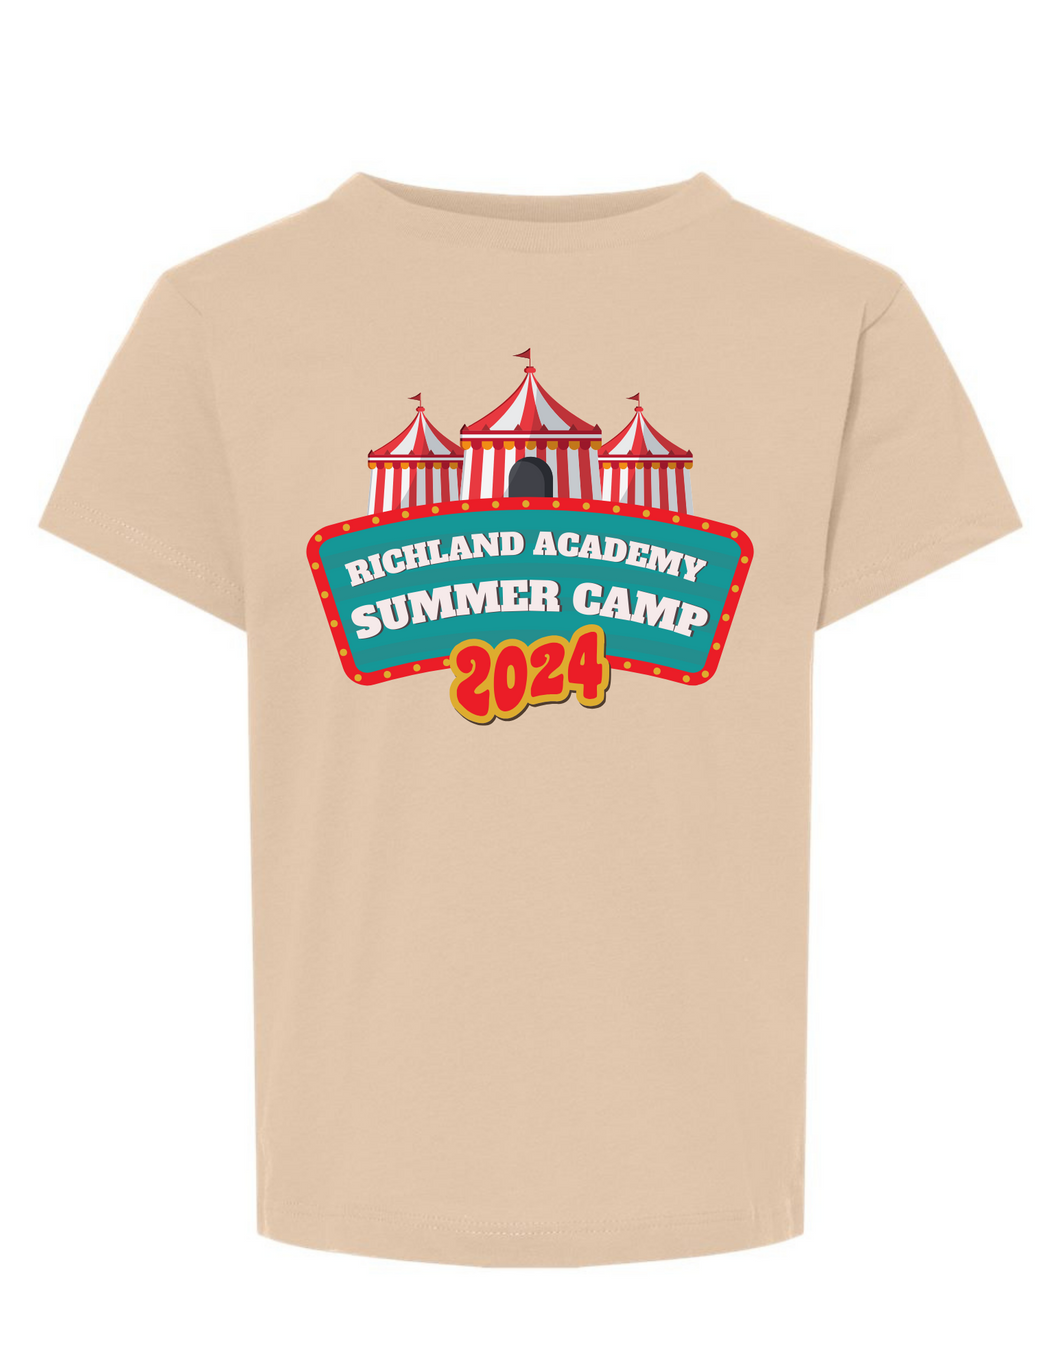 Richland Academy Summer Camp Shirt